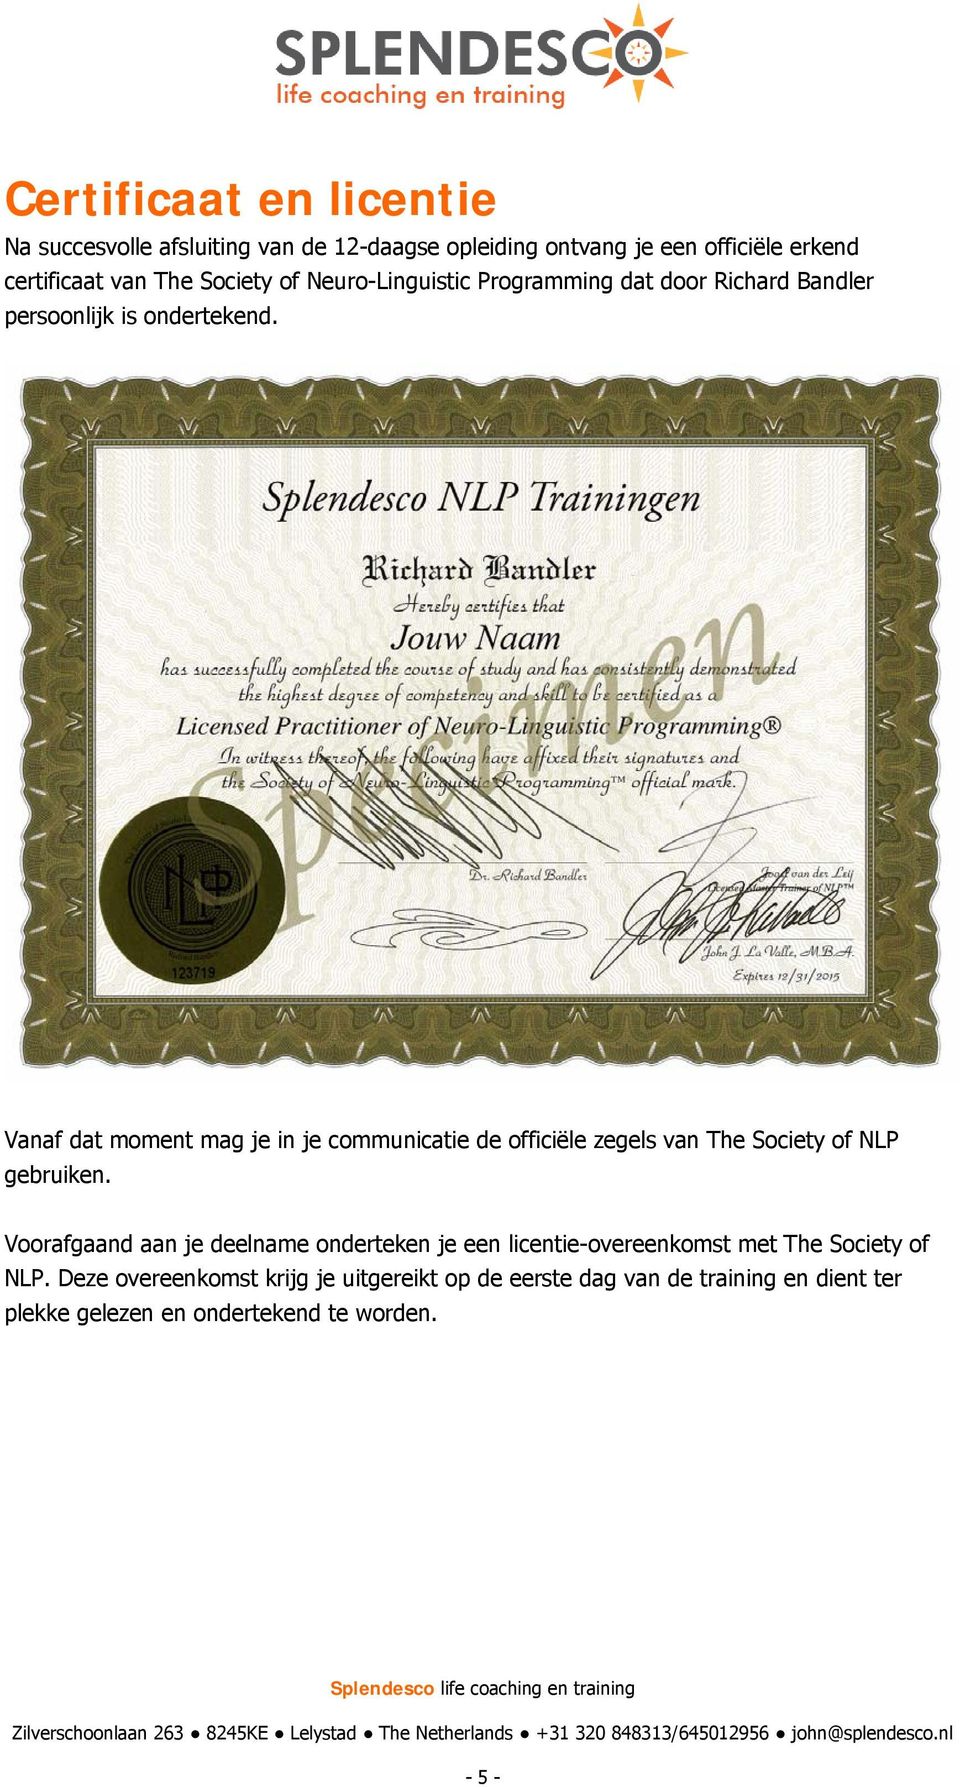 Vanaf dat moment mag je in je communicatie de officiële zegels van The Society of NLP gebruiken.